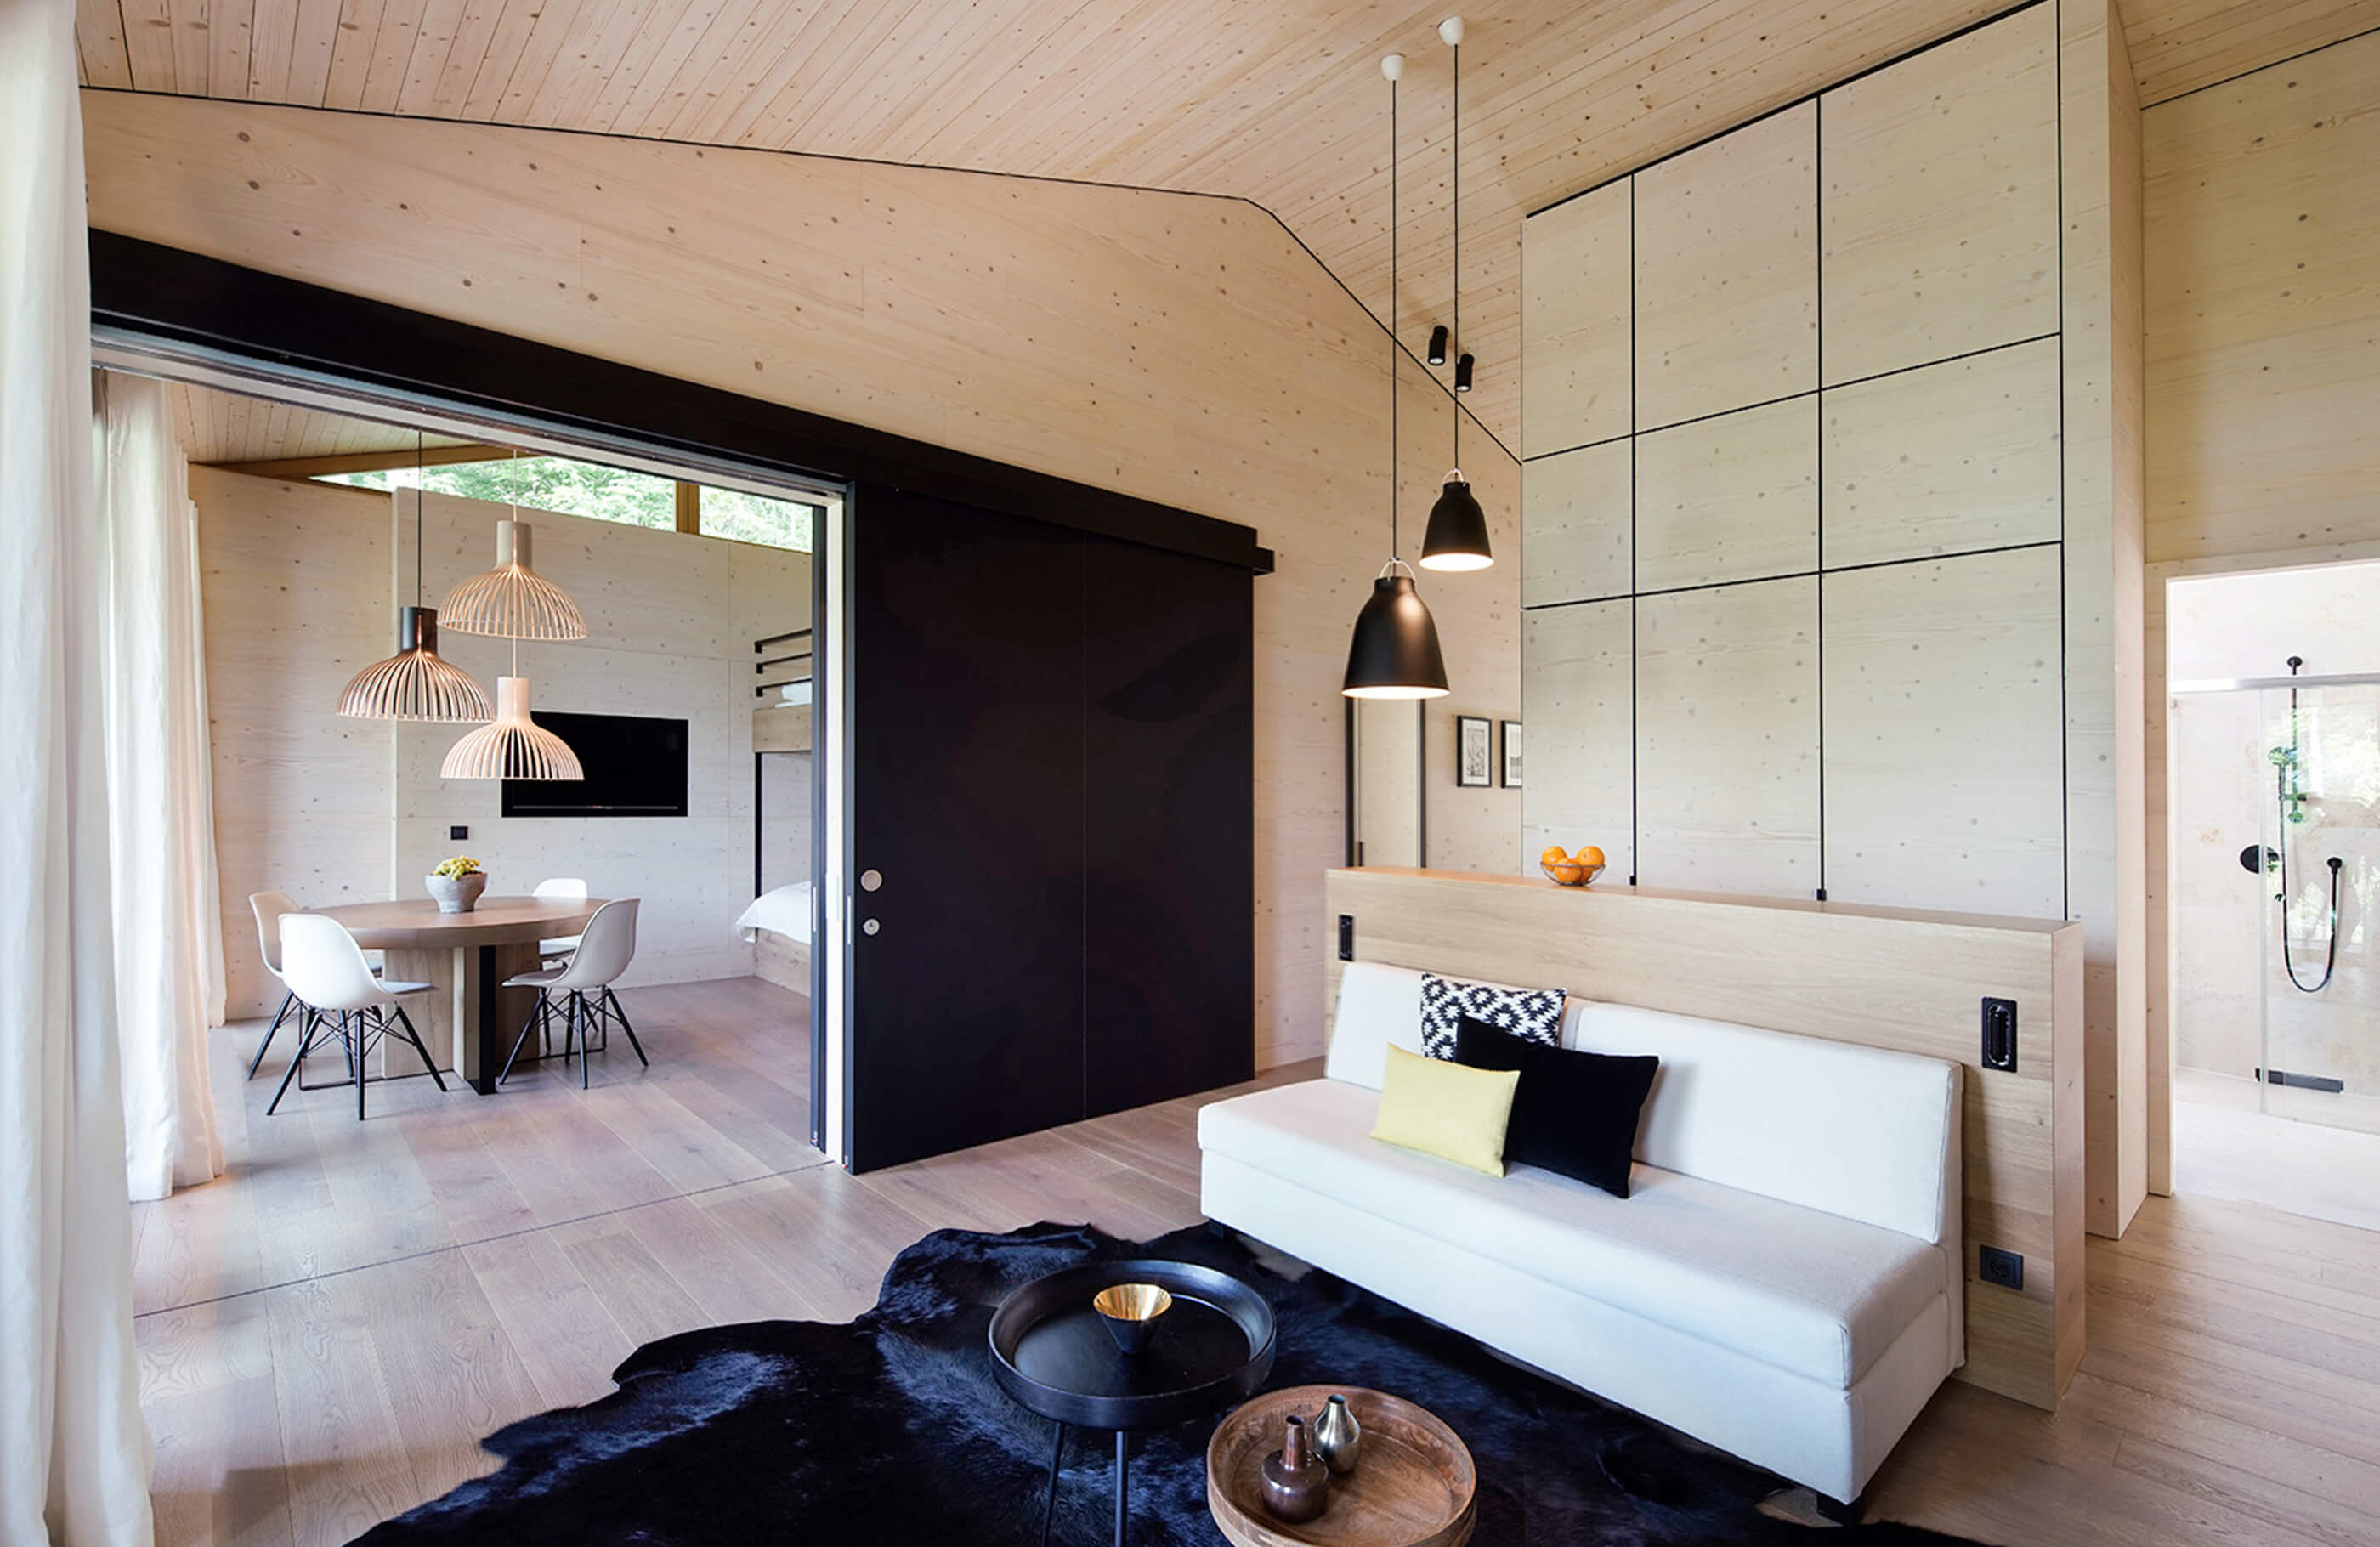 Aufnahme im Wohnraum des Alpenchalets vom Lifestyle Hotel in Bayern am Tegernsee mit einem schwarzen Teppich, weißem Sofa und Blick ins angrenzende Zimmer mit einem Essbereich bestehend aus einem runden Holztisch und vier weißen Stühlen.